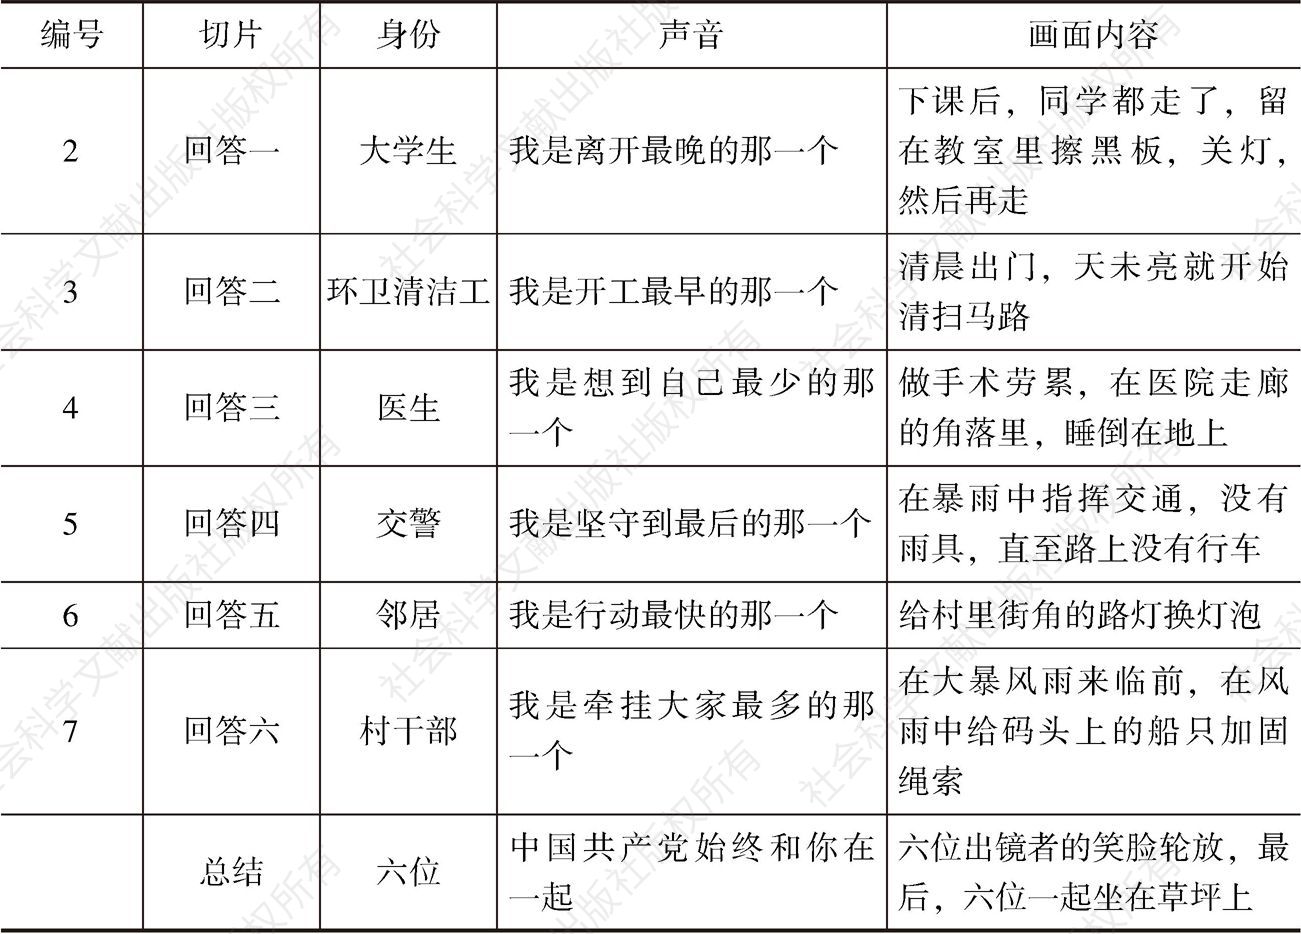 表4-4 中国共产党《我是谁》视频广告切片-续表